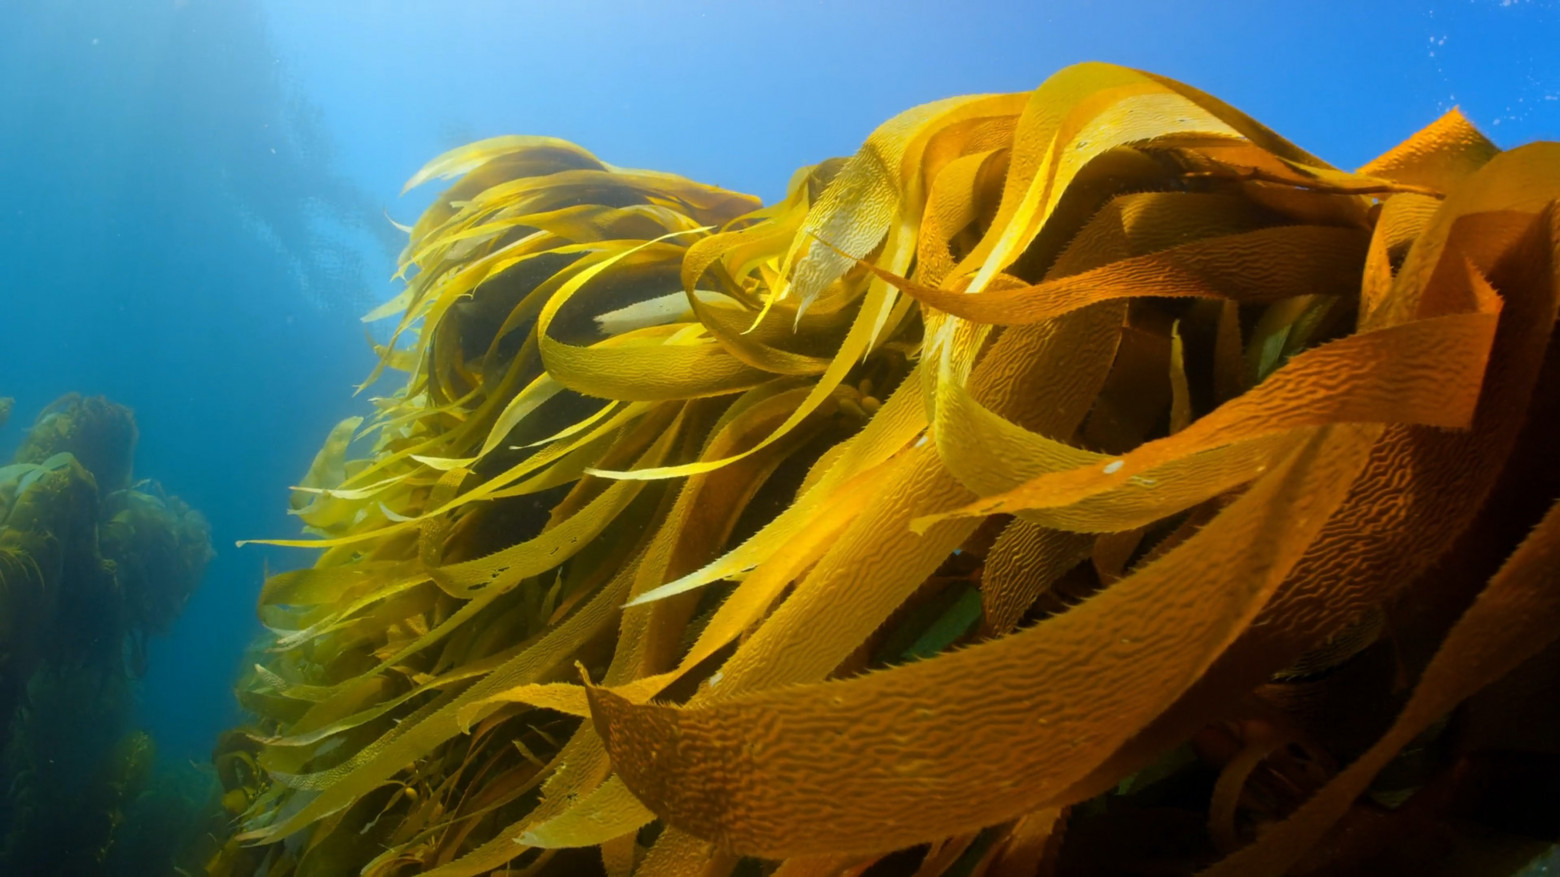 Yellow leaves of kelp swaying in a blue ocean.